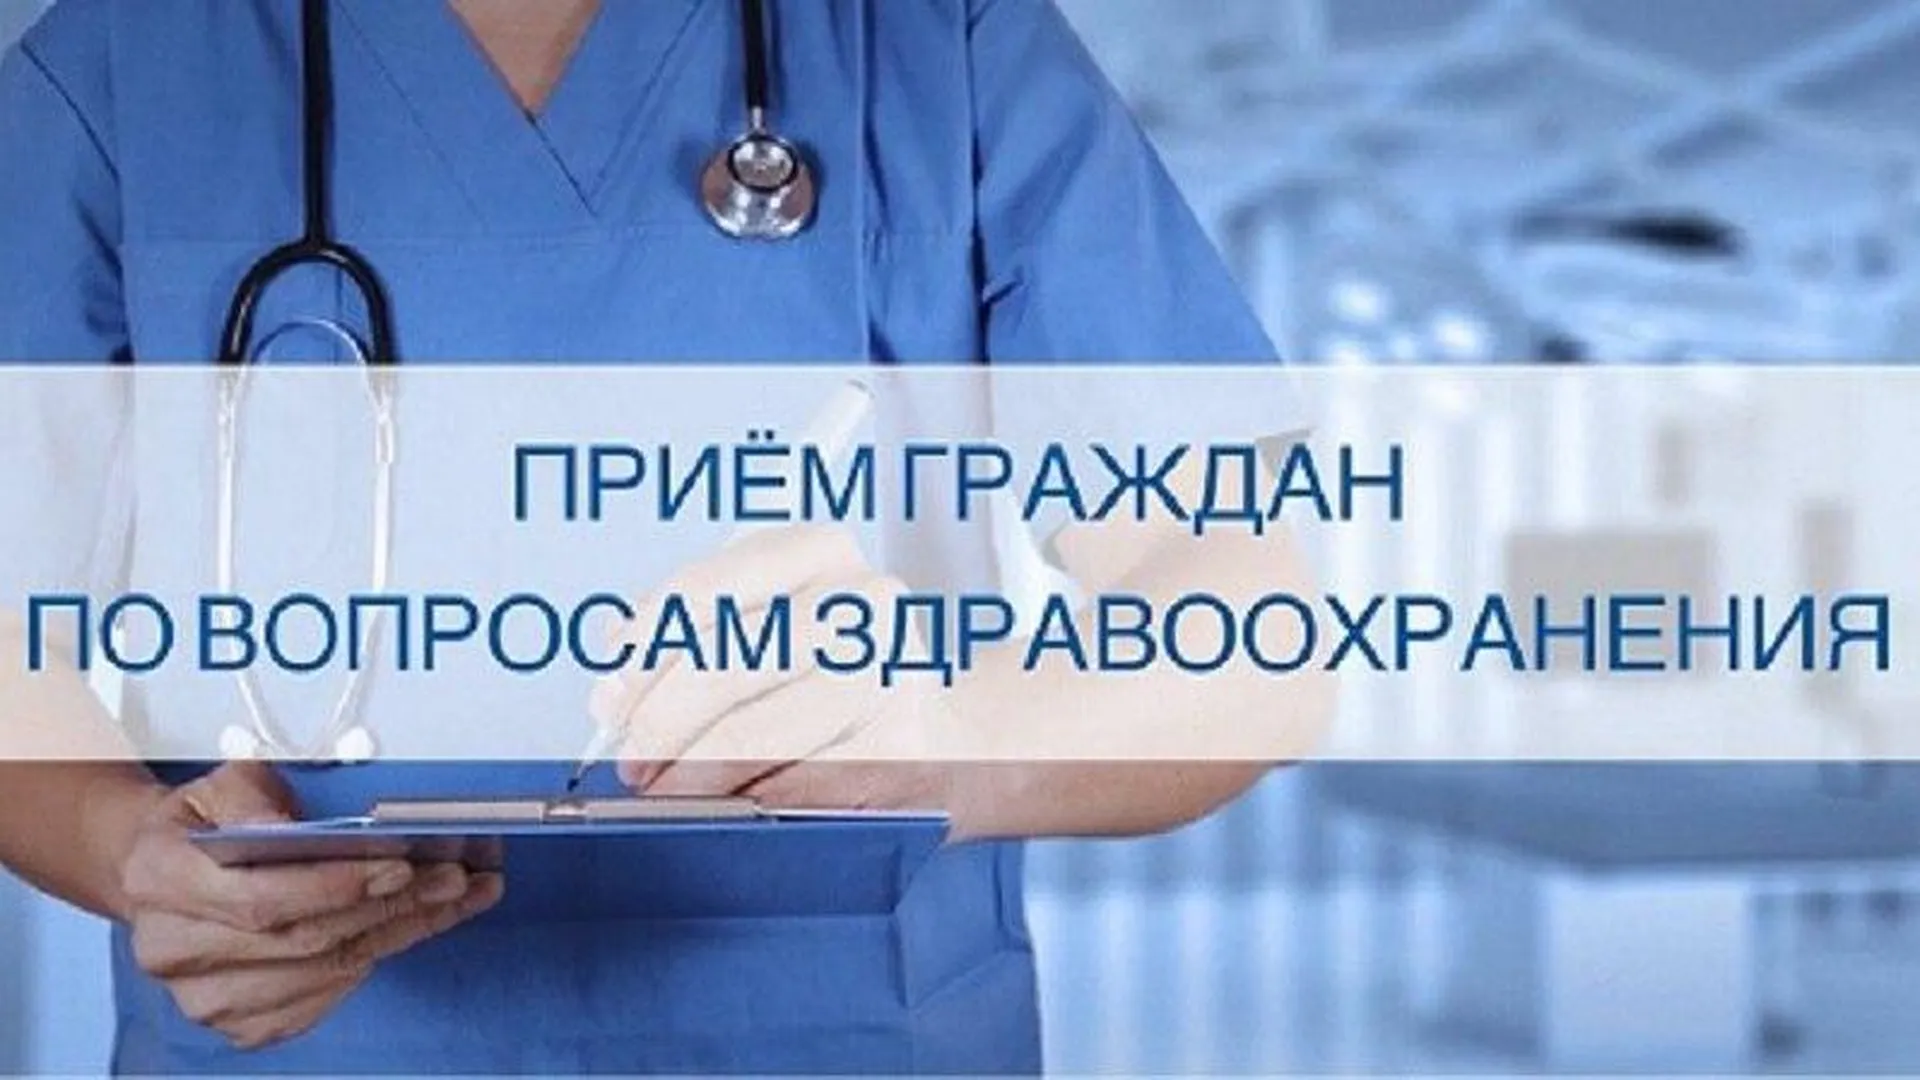 Прием по вопросам здравоохранения пройдет в Г.о. Пушкинский